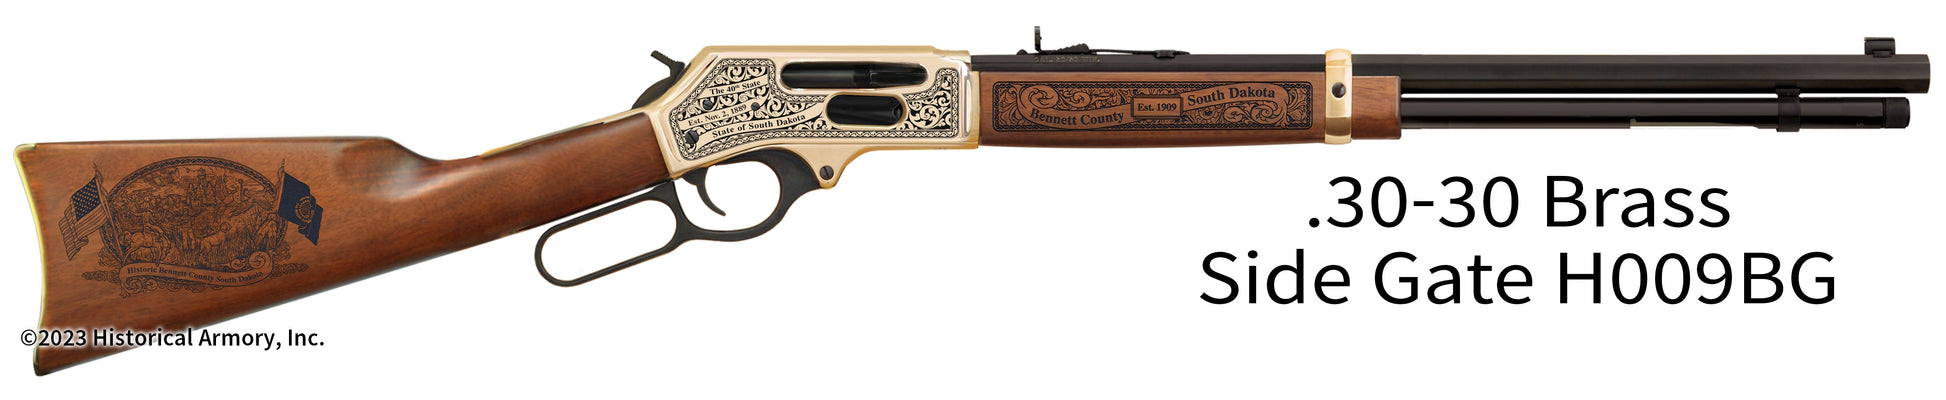 Bennett County South Dakota Engraved Henry .30-30 Brass Side Gate Rifle